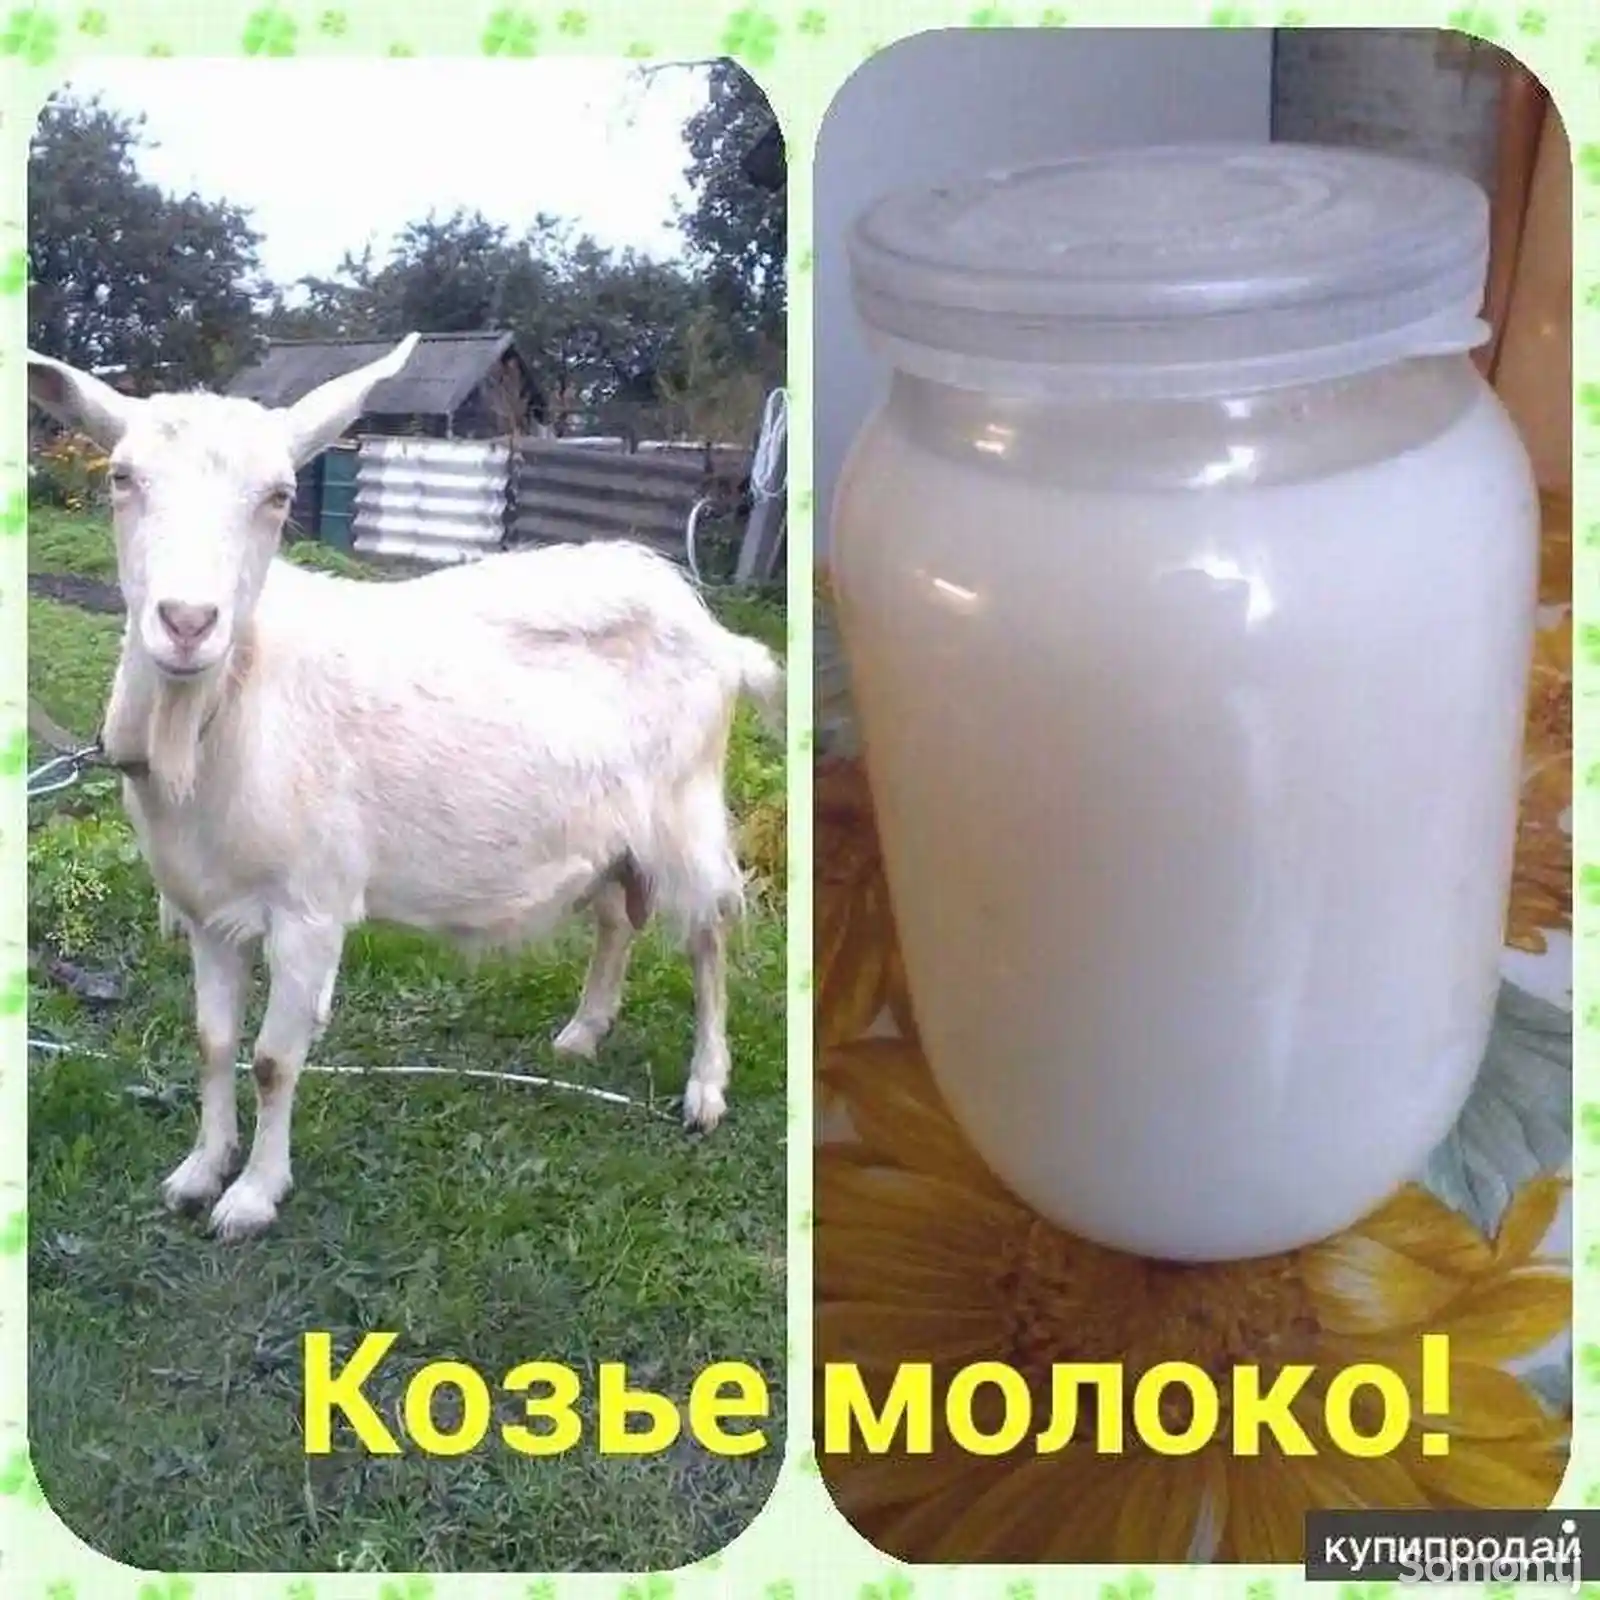 Козье молоко-1